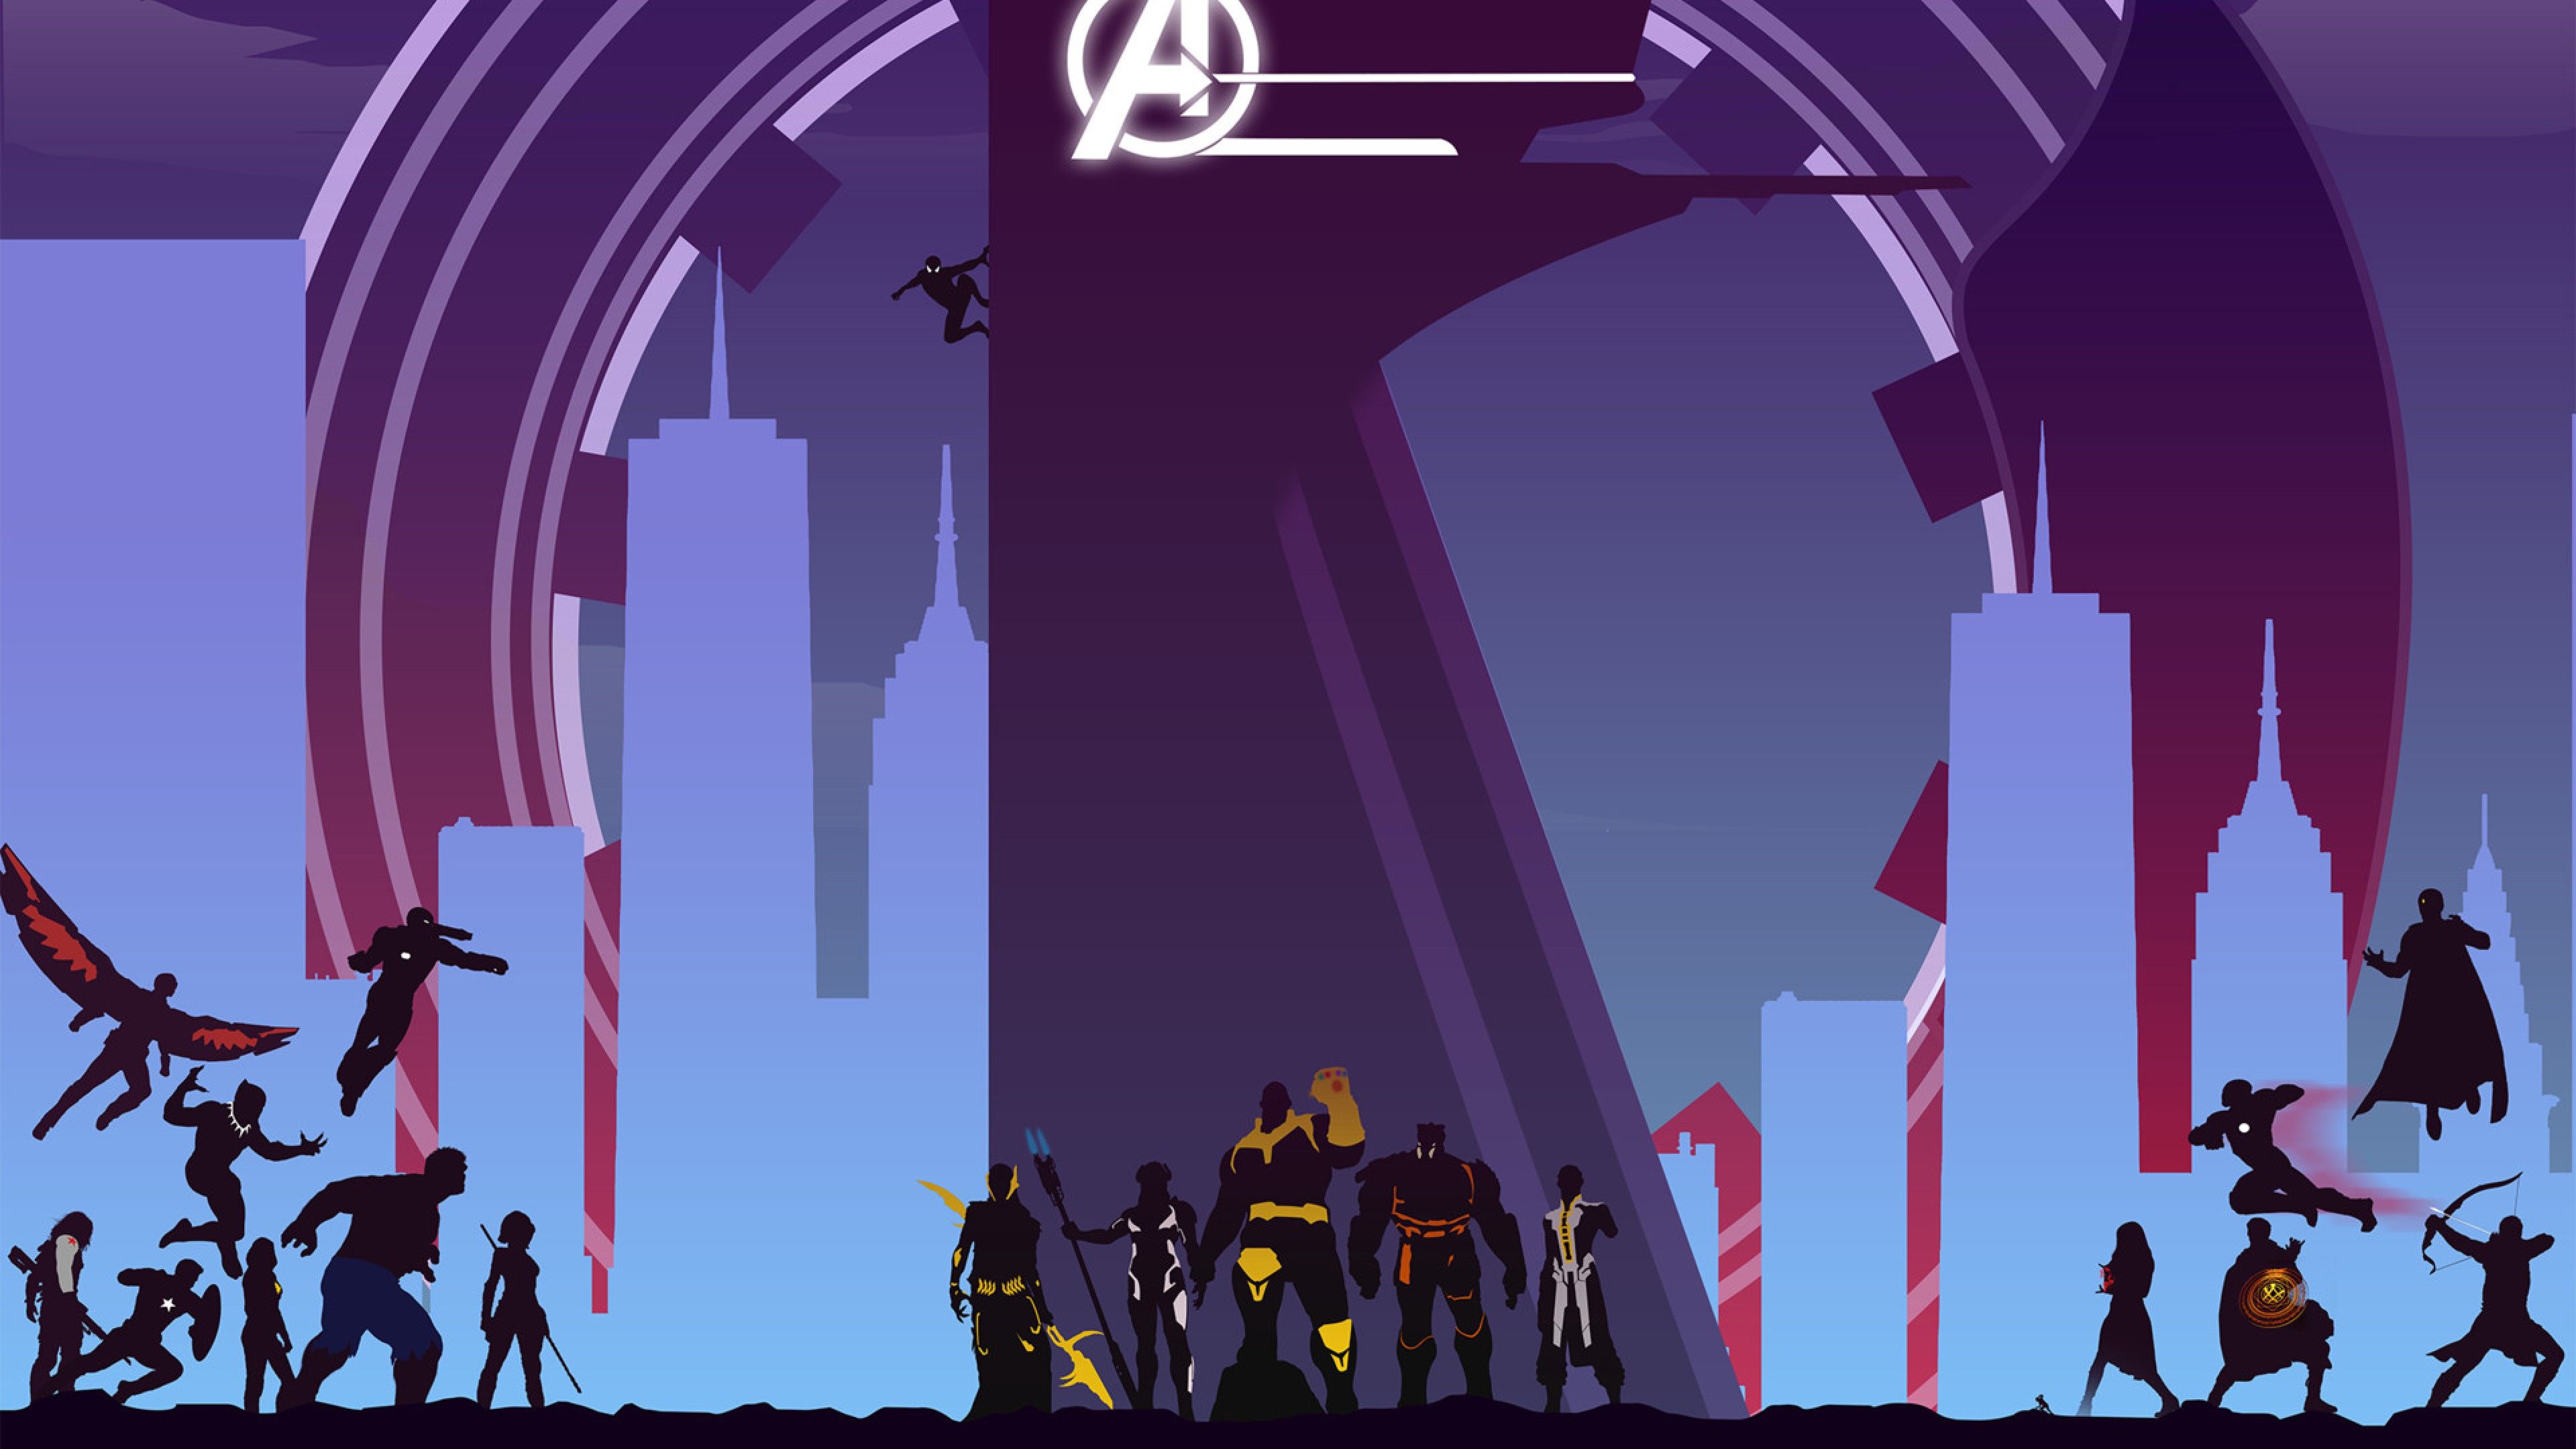 Avengers Infinity War Artwork Full HD Wallpaper for Desktop and Mobiles 4K Ultra HD